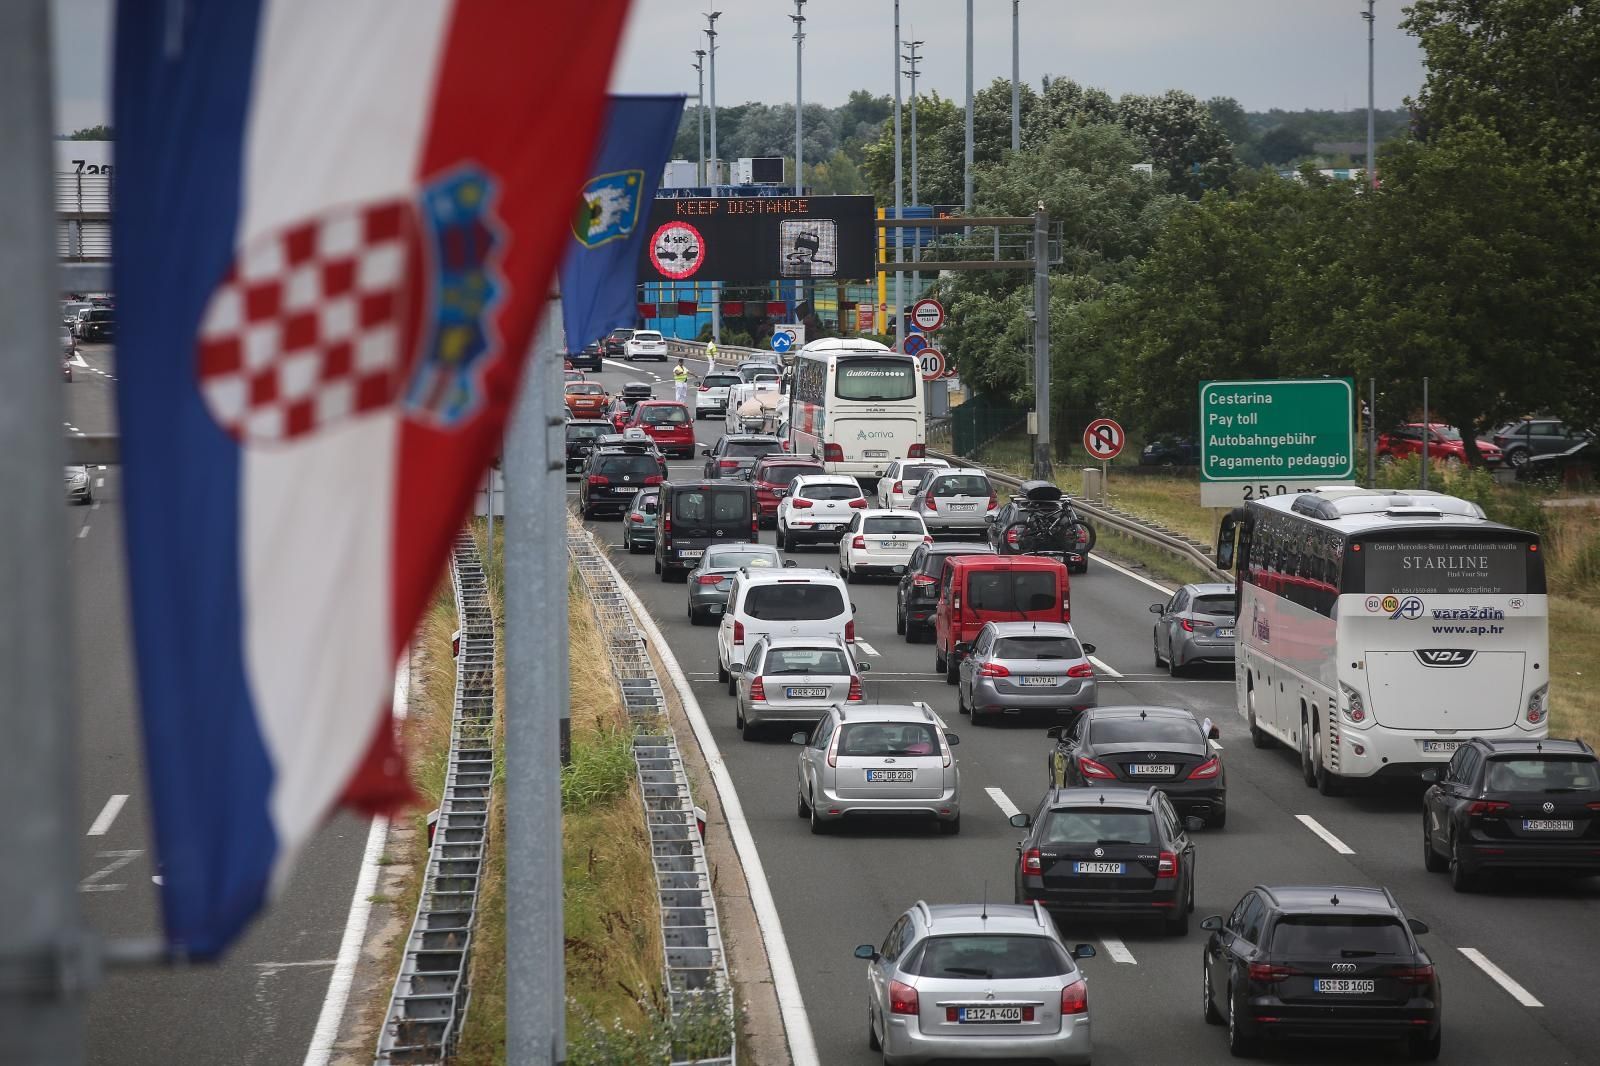 17.07.2021., Zagreb - Pojacan promet prema moru na naplatnim kucicama Lucko.
Photo: Zeljko Hladika/PIXSELL